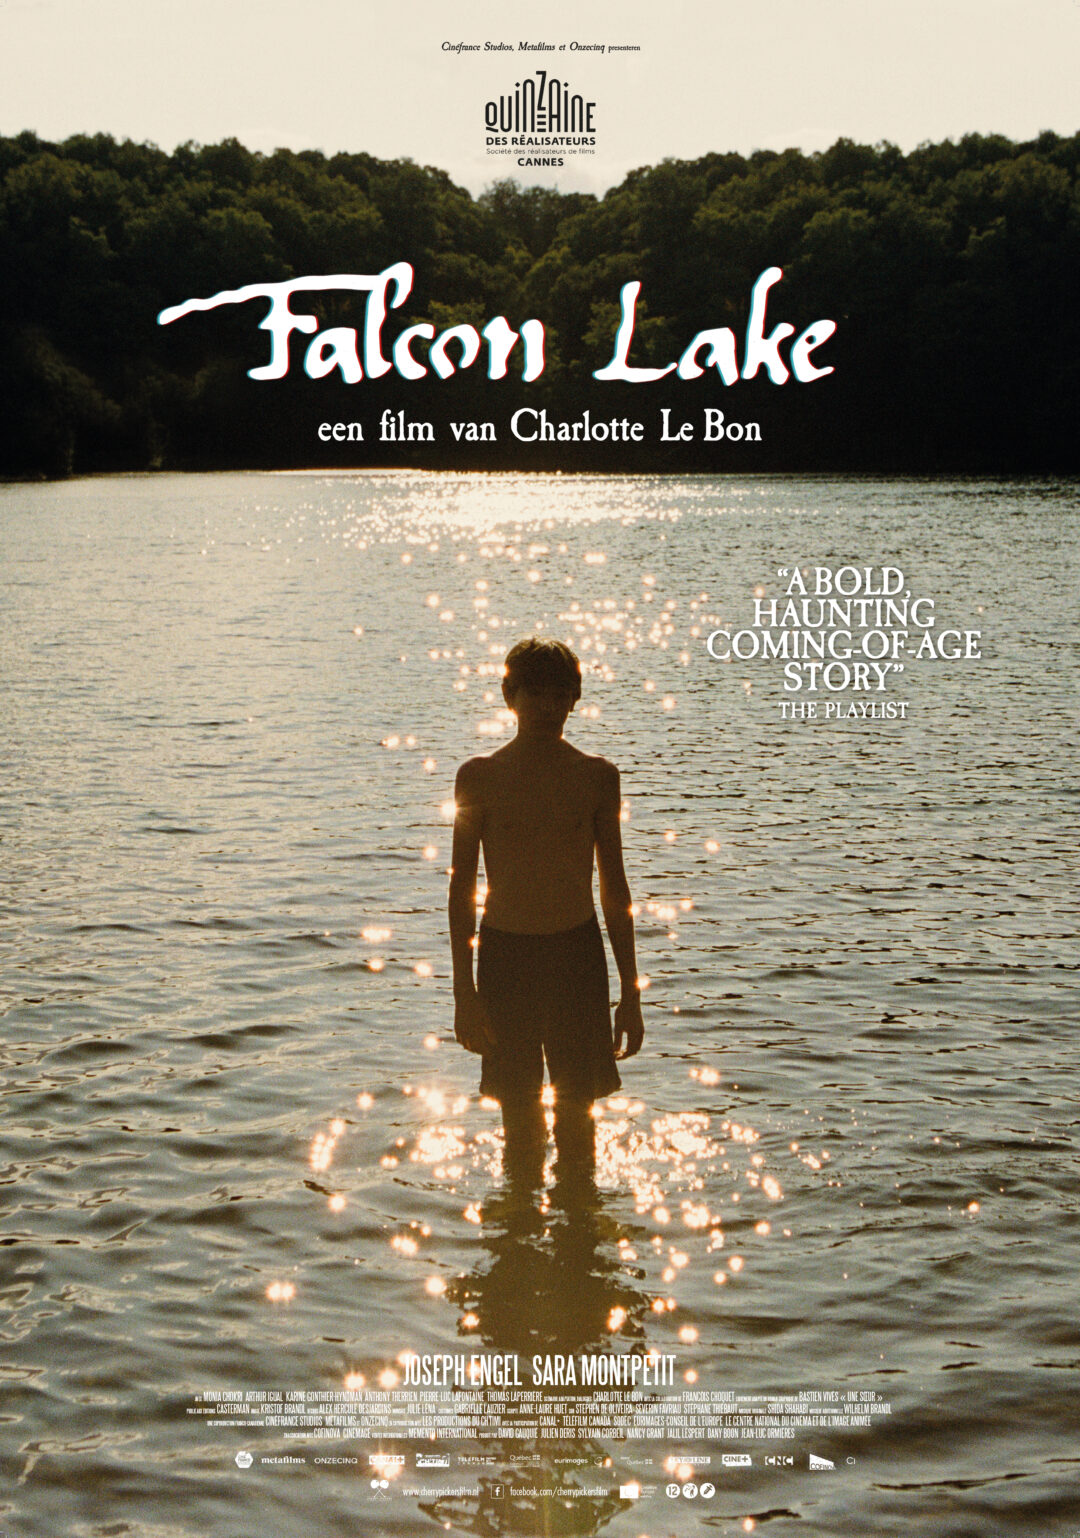 Falcon-Lake_ps_1_jpg_sd-high.jpg